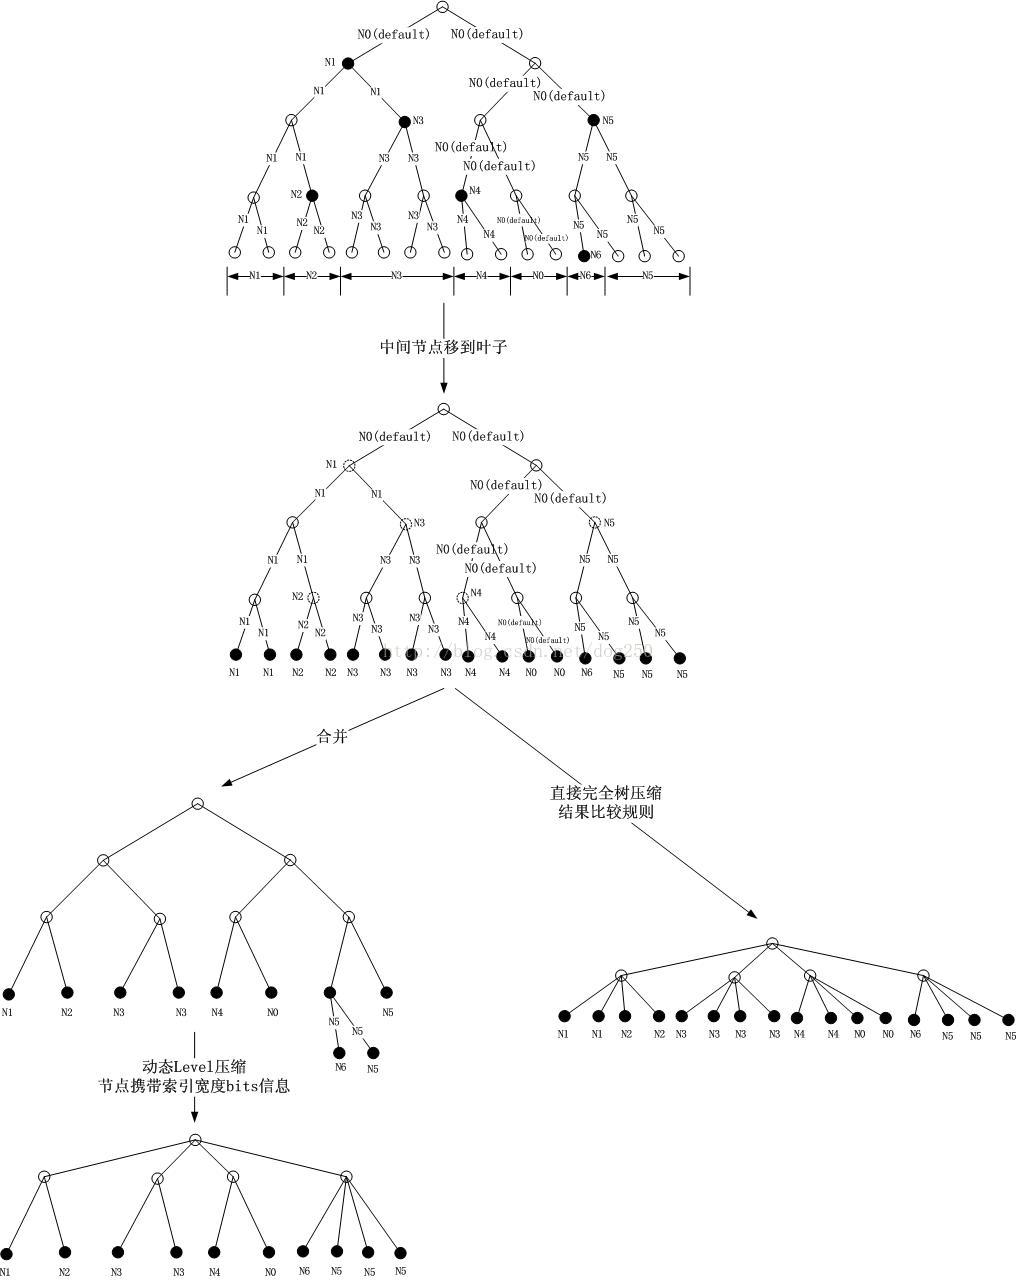 命题作文：在一棵IPv4地址树中彻底理解IP路由表的各种查找过程_ipv4路由表内容